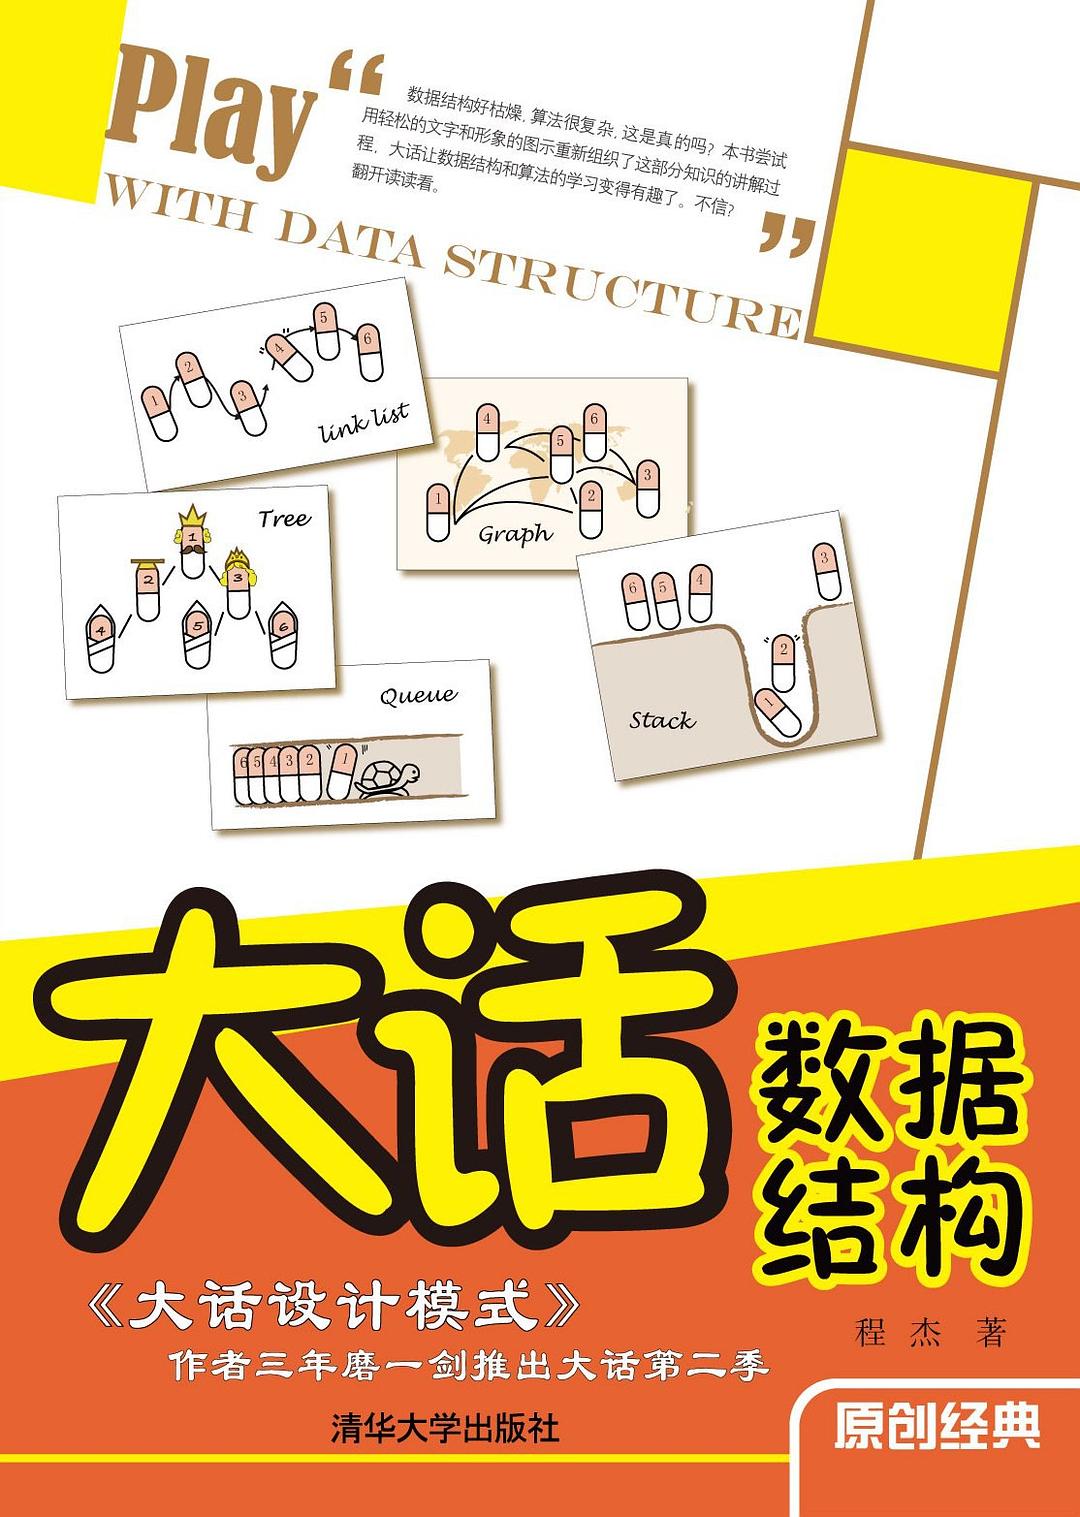 大话数据结构 (中文 language, 2011, 清华大学出版社)